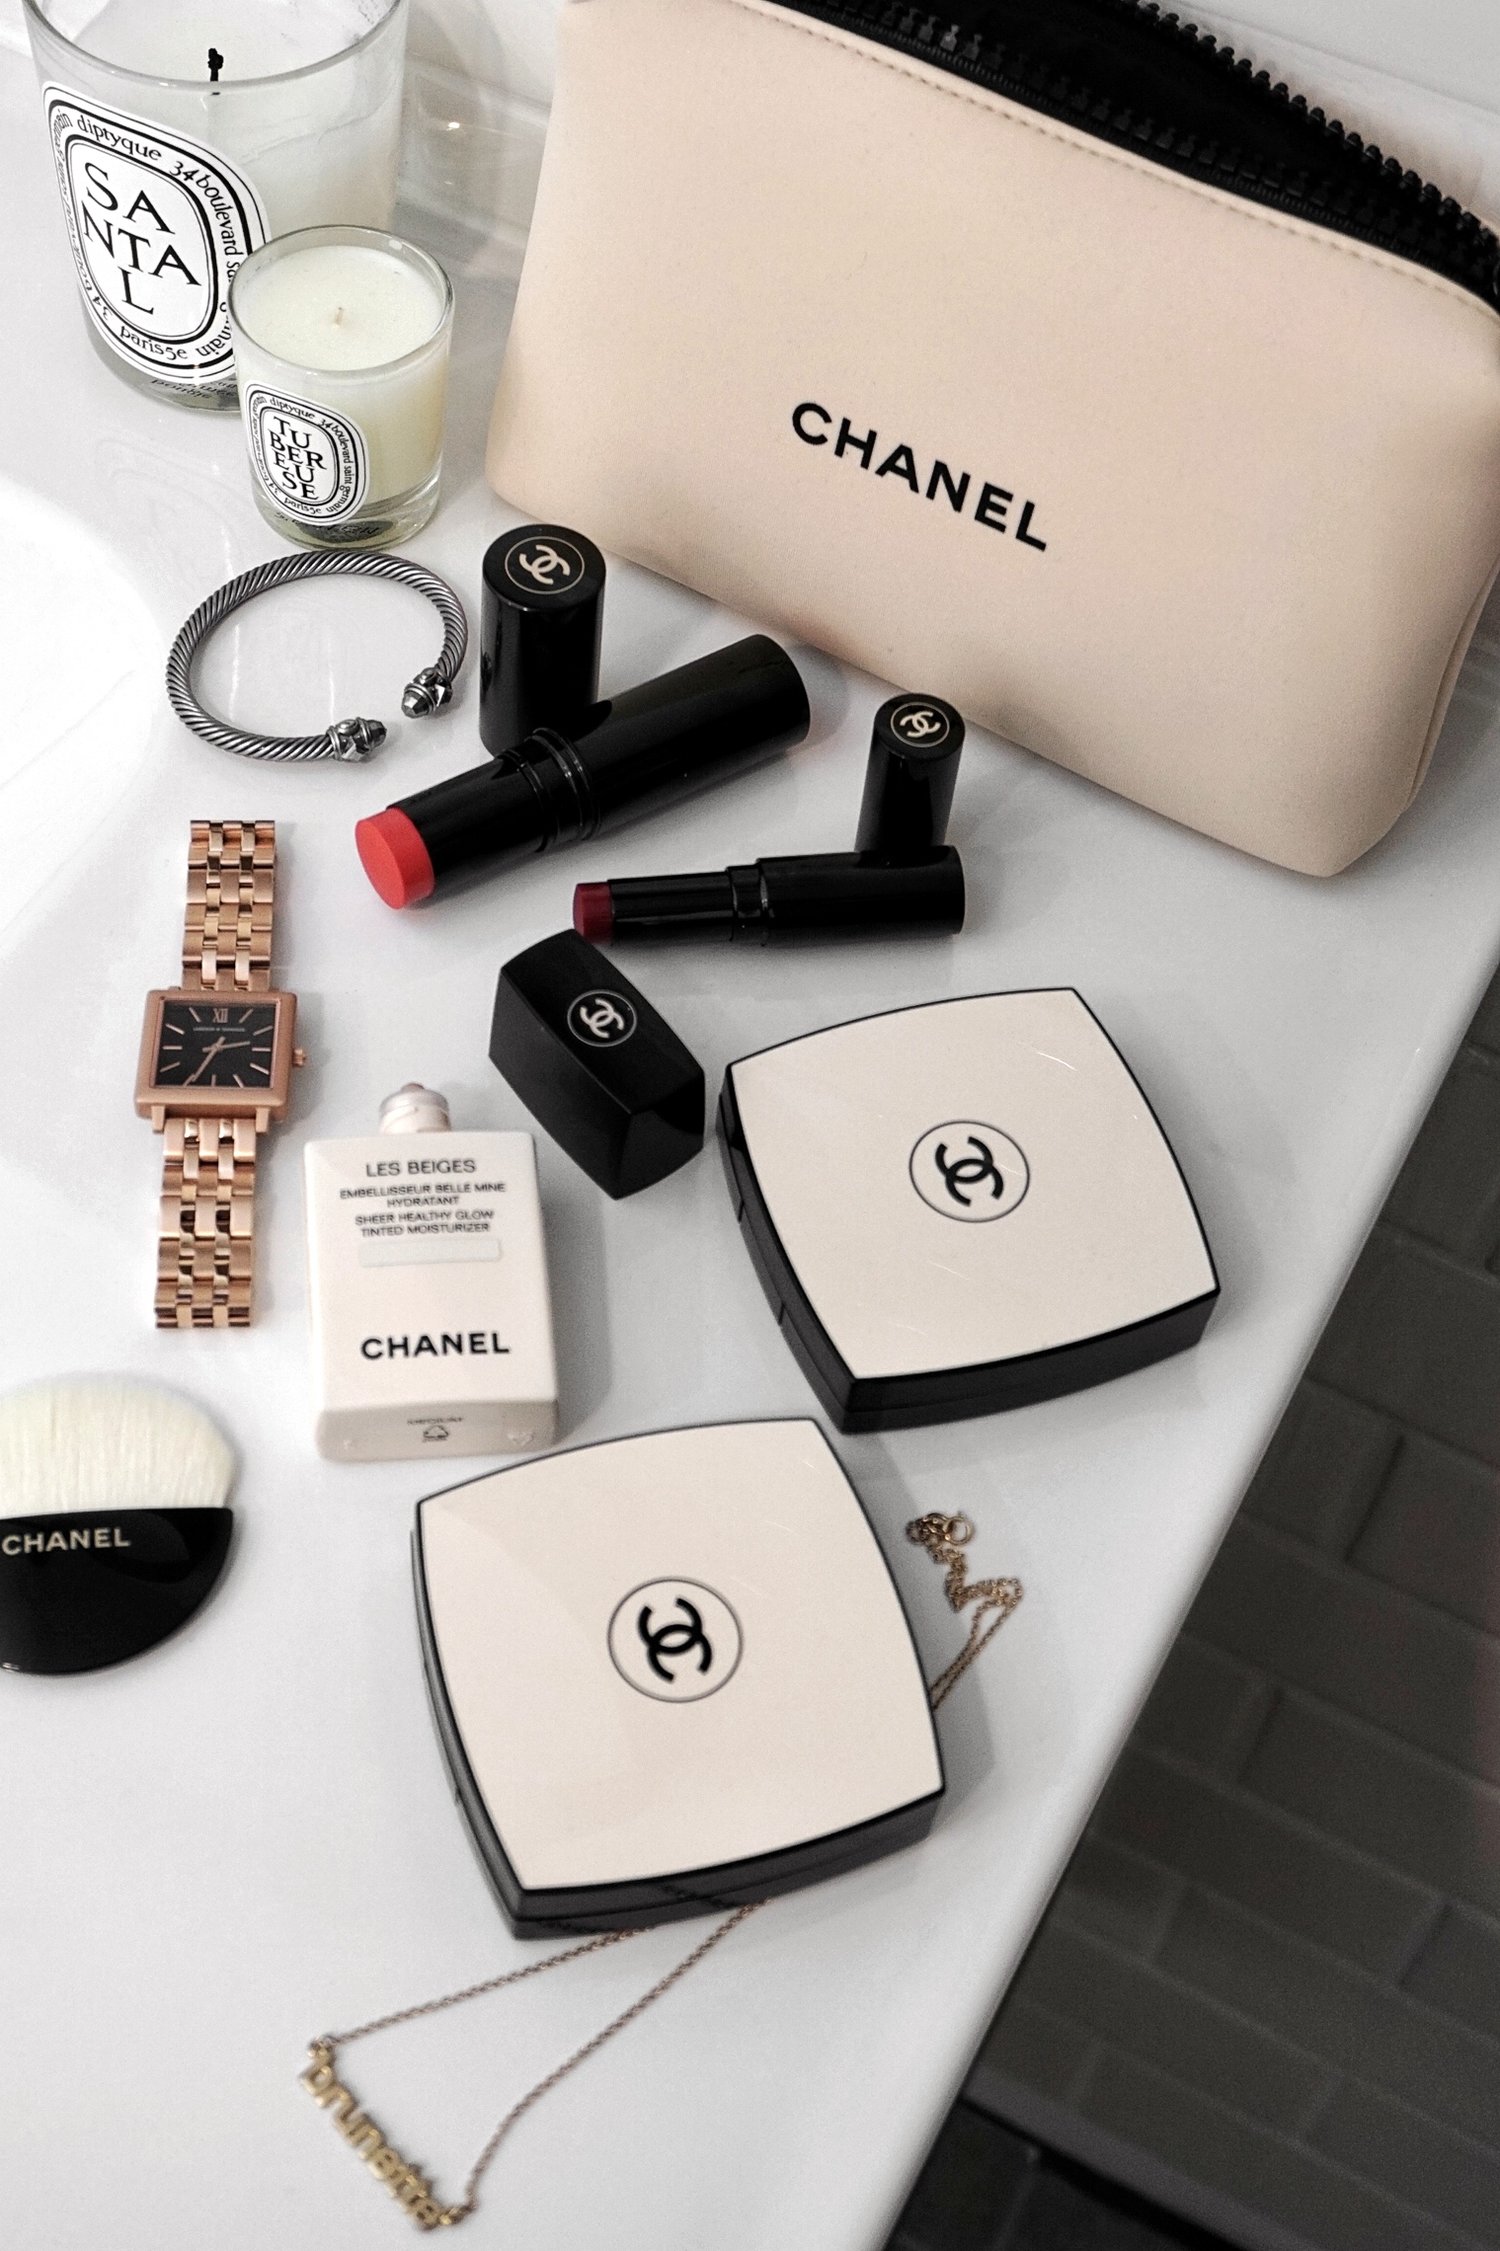 Chanel Les Beiges 2018